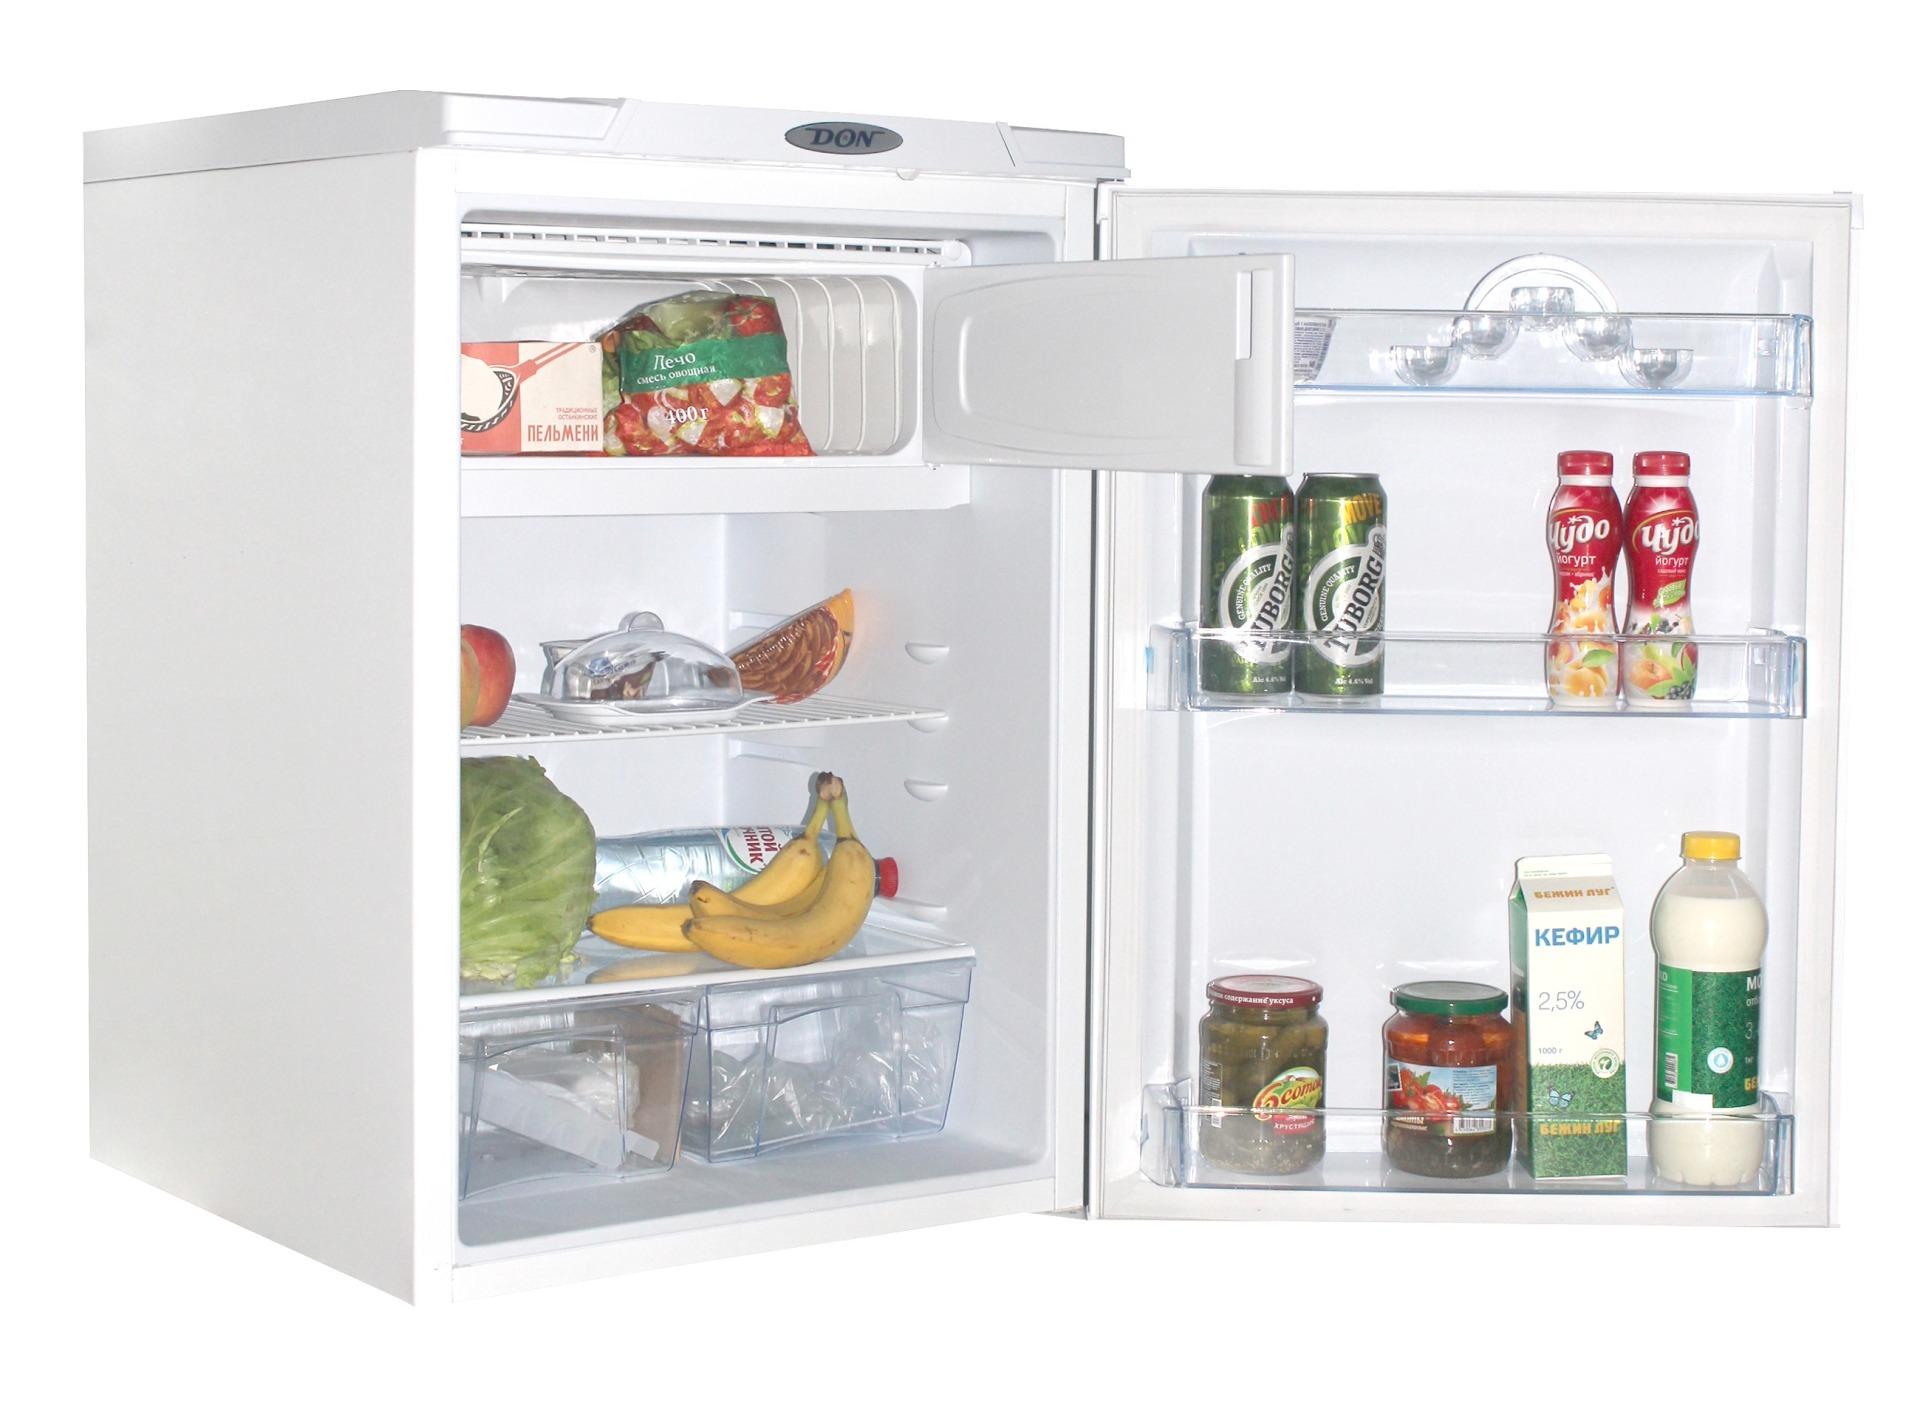 Холодильник дон производитель. Холодильник однокамерный don r 405 g. Холодильник don r 405 001 b. Холодильник don r 405 графит. Холодильник don r-405 g графит.